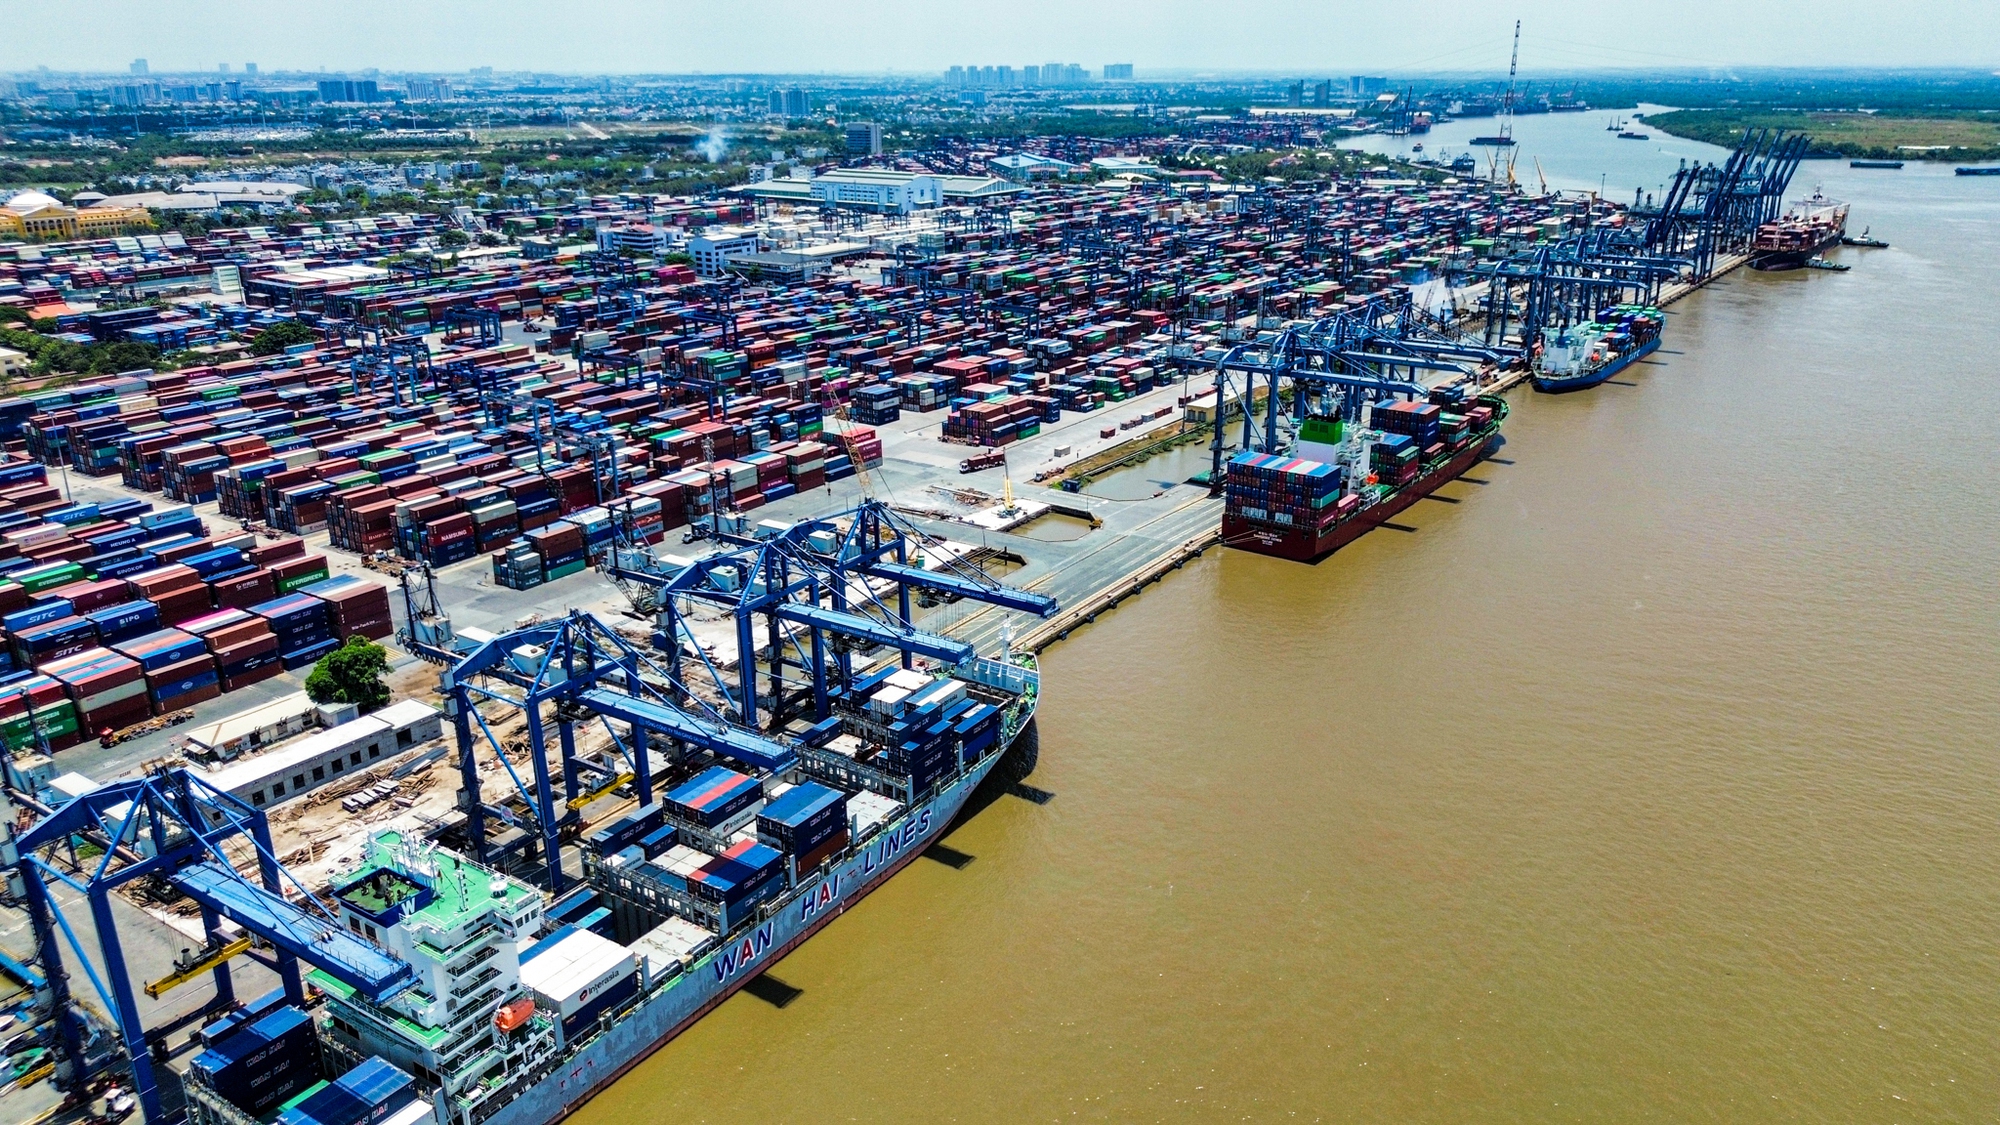 Toàn cảnh cảng biển lớn nhất Việt Nam, có lượng bốc dỡ container bằng tất cả cảng ở miền Bắc và miền Trung gộp lại - Ảnh 2.